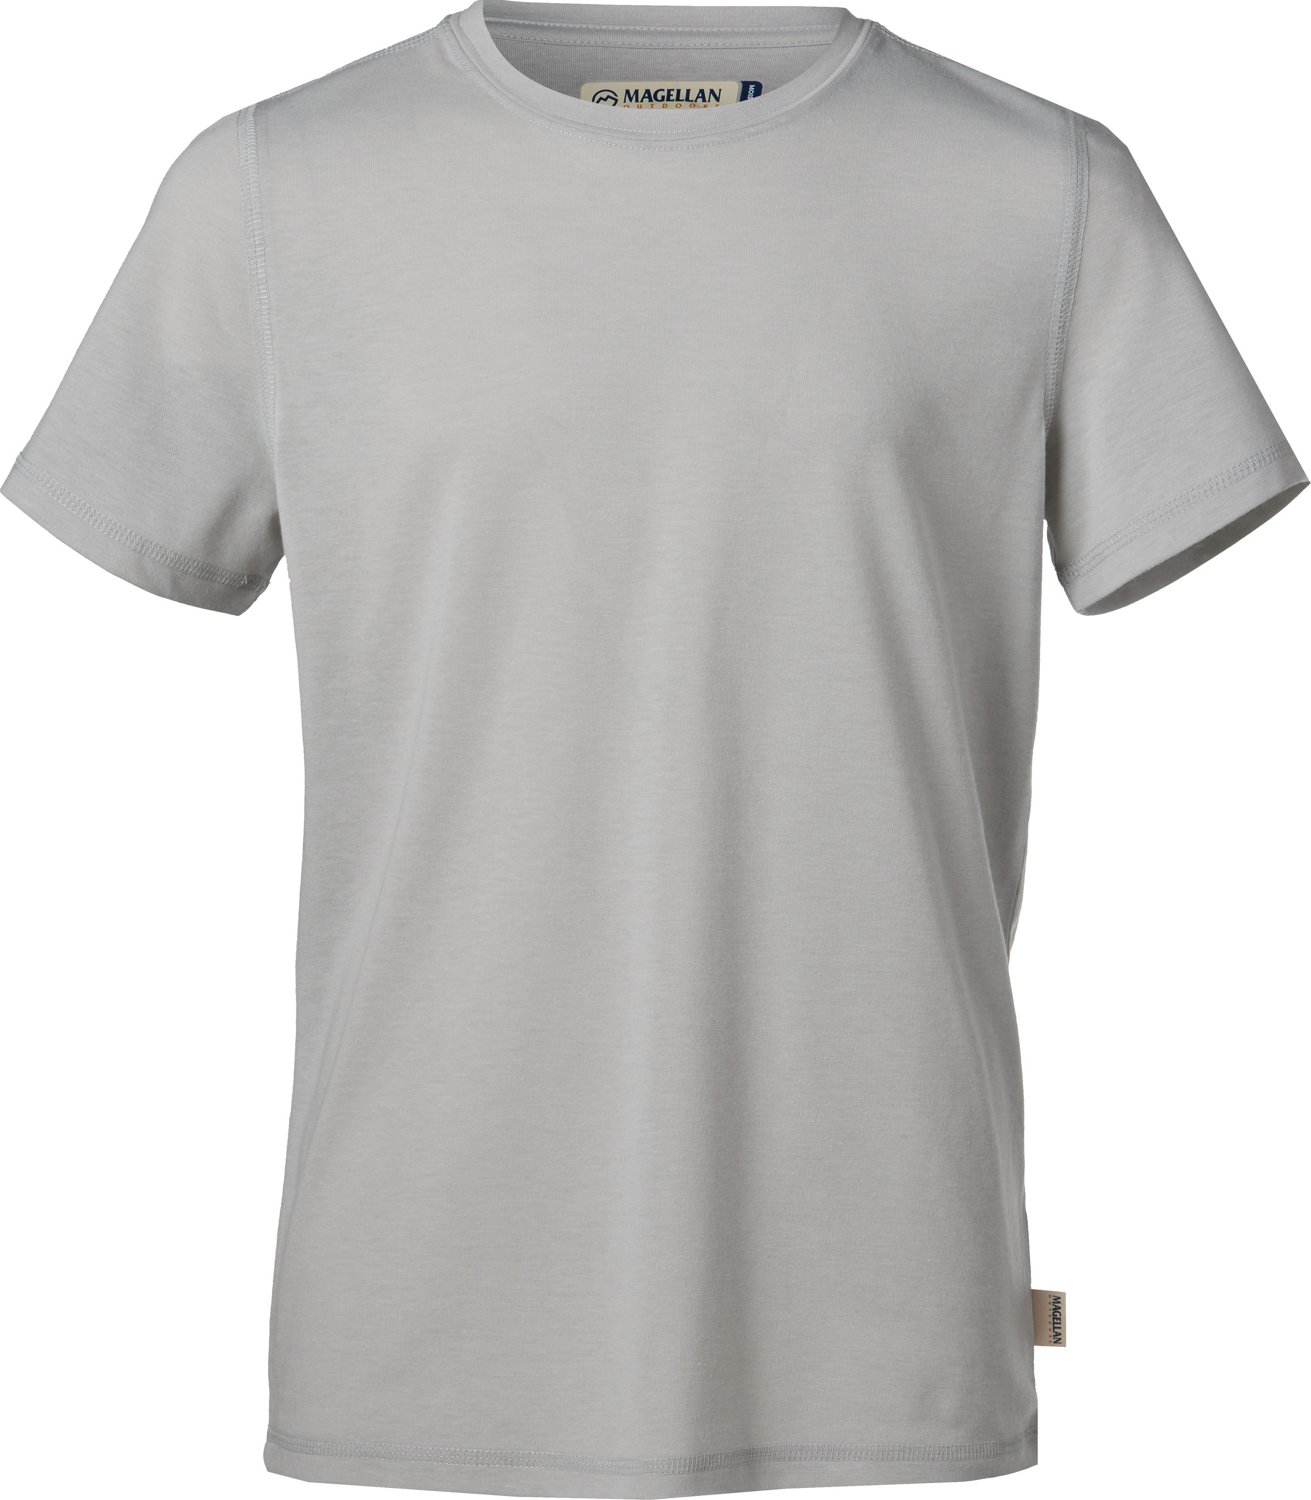 Magellan Outdoors Boys Catch & Release Short Sleeve T-shirt